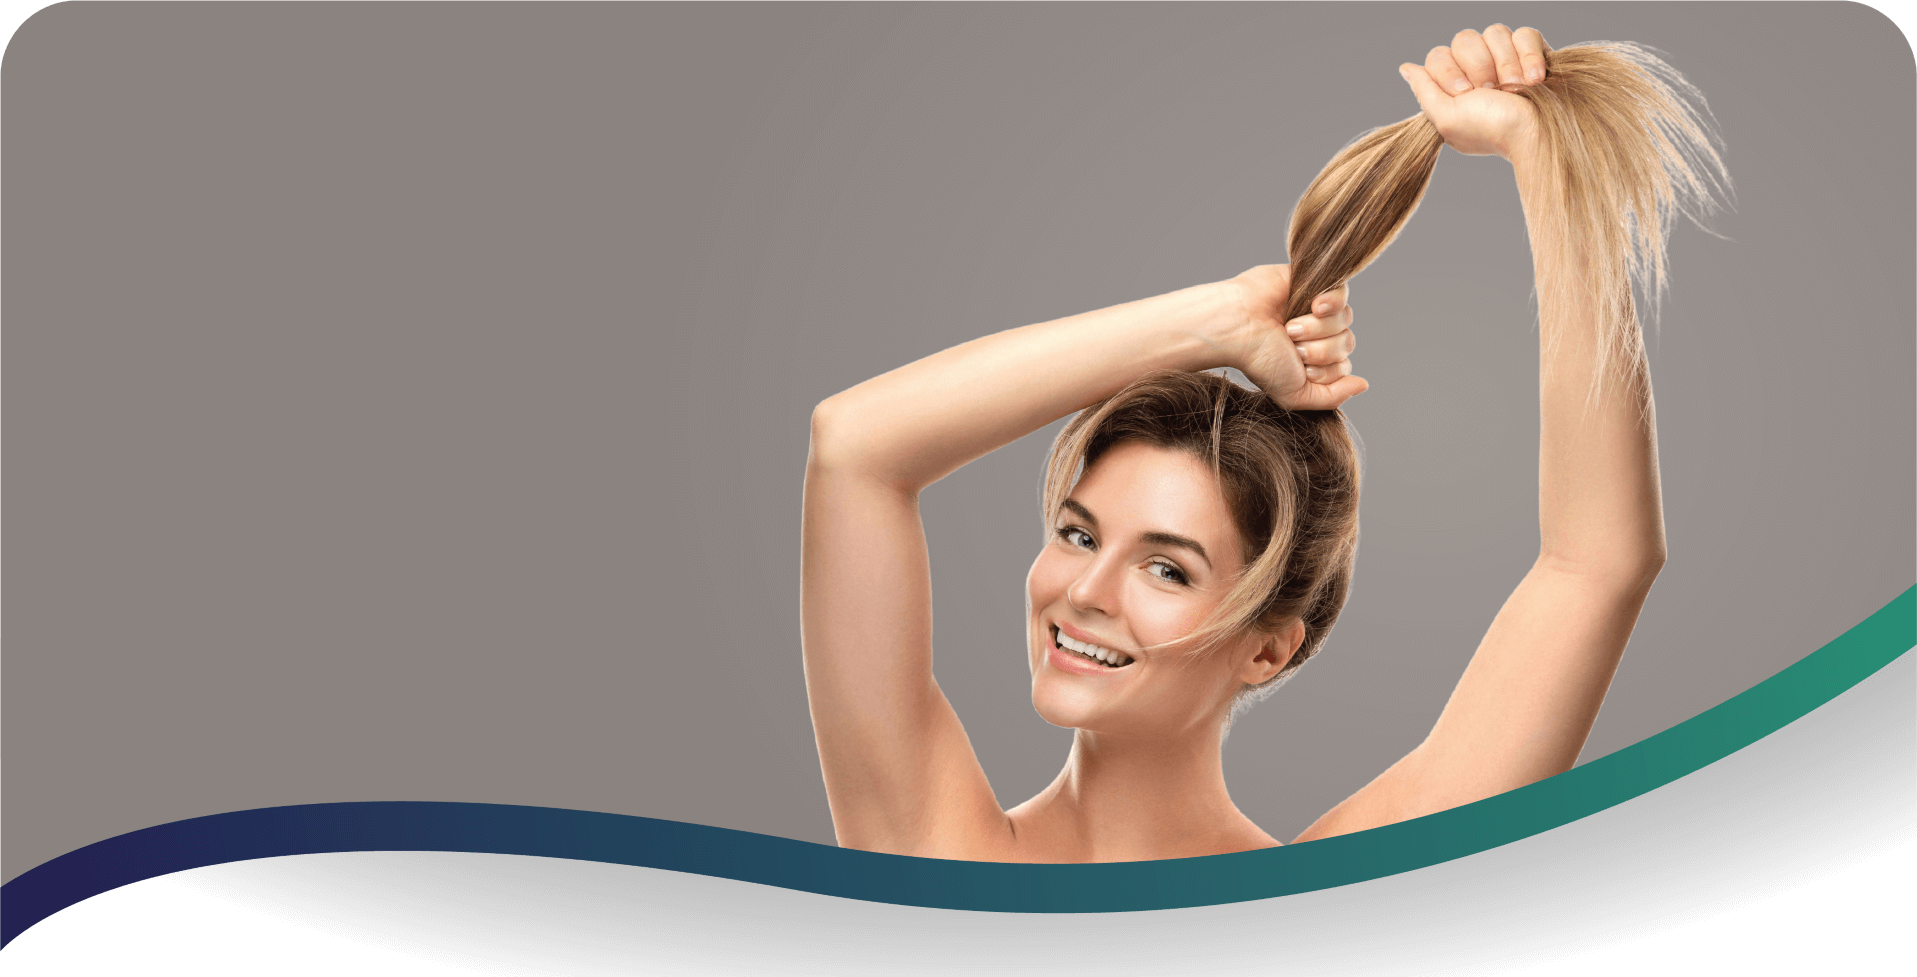 Hair strengthening treatment